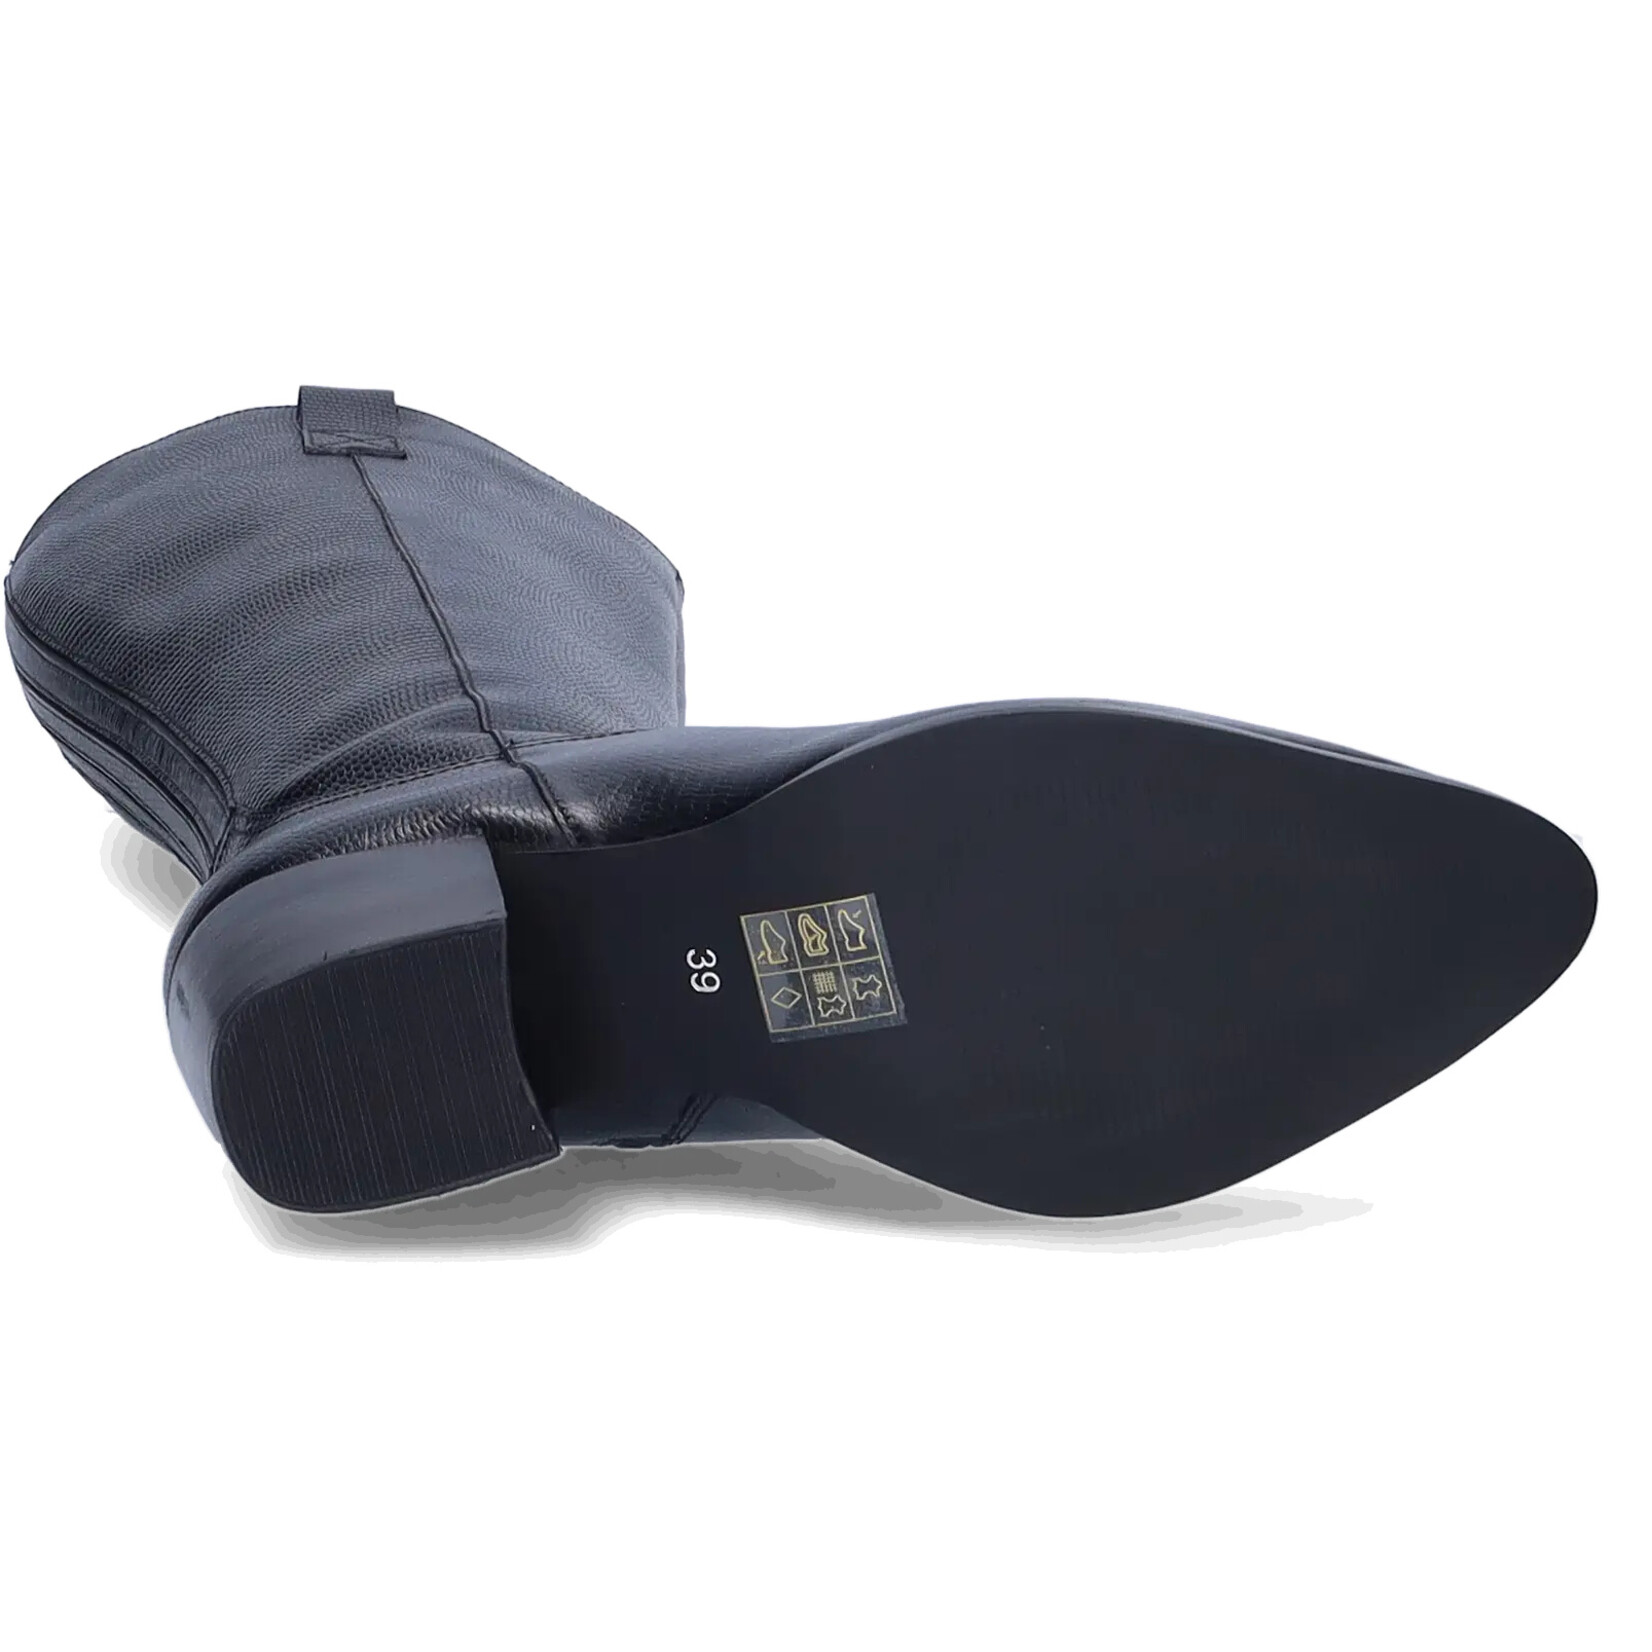 JJ Footwear Adana - Black